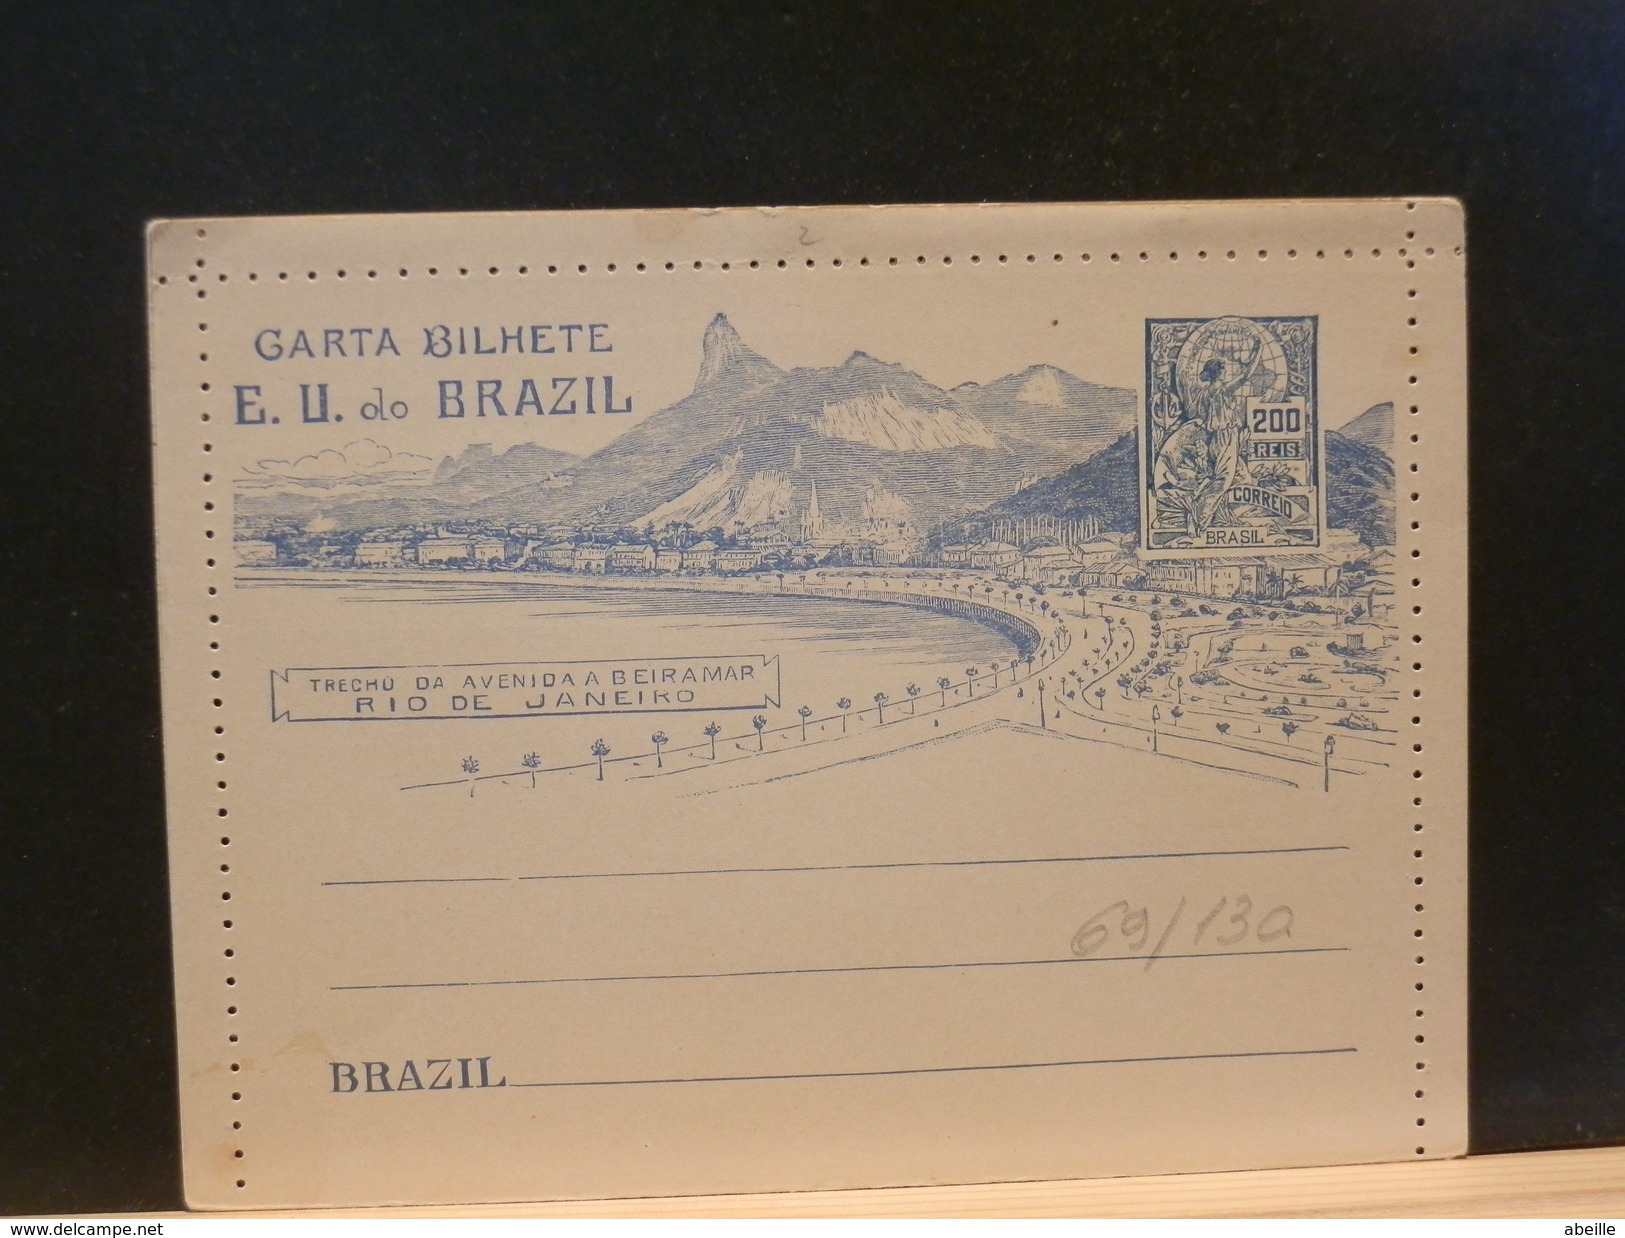 69/130   CARTA BILHETE   XX - Postal Stationery